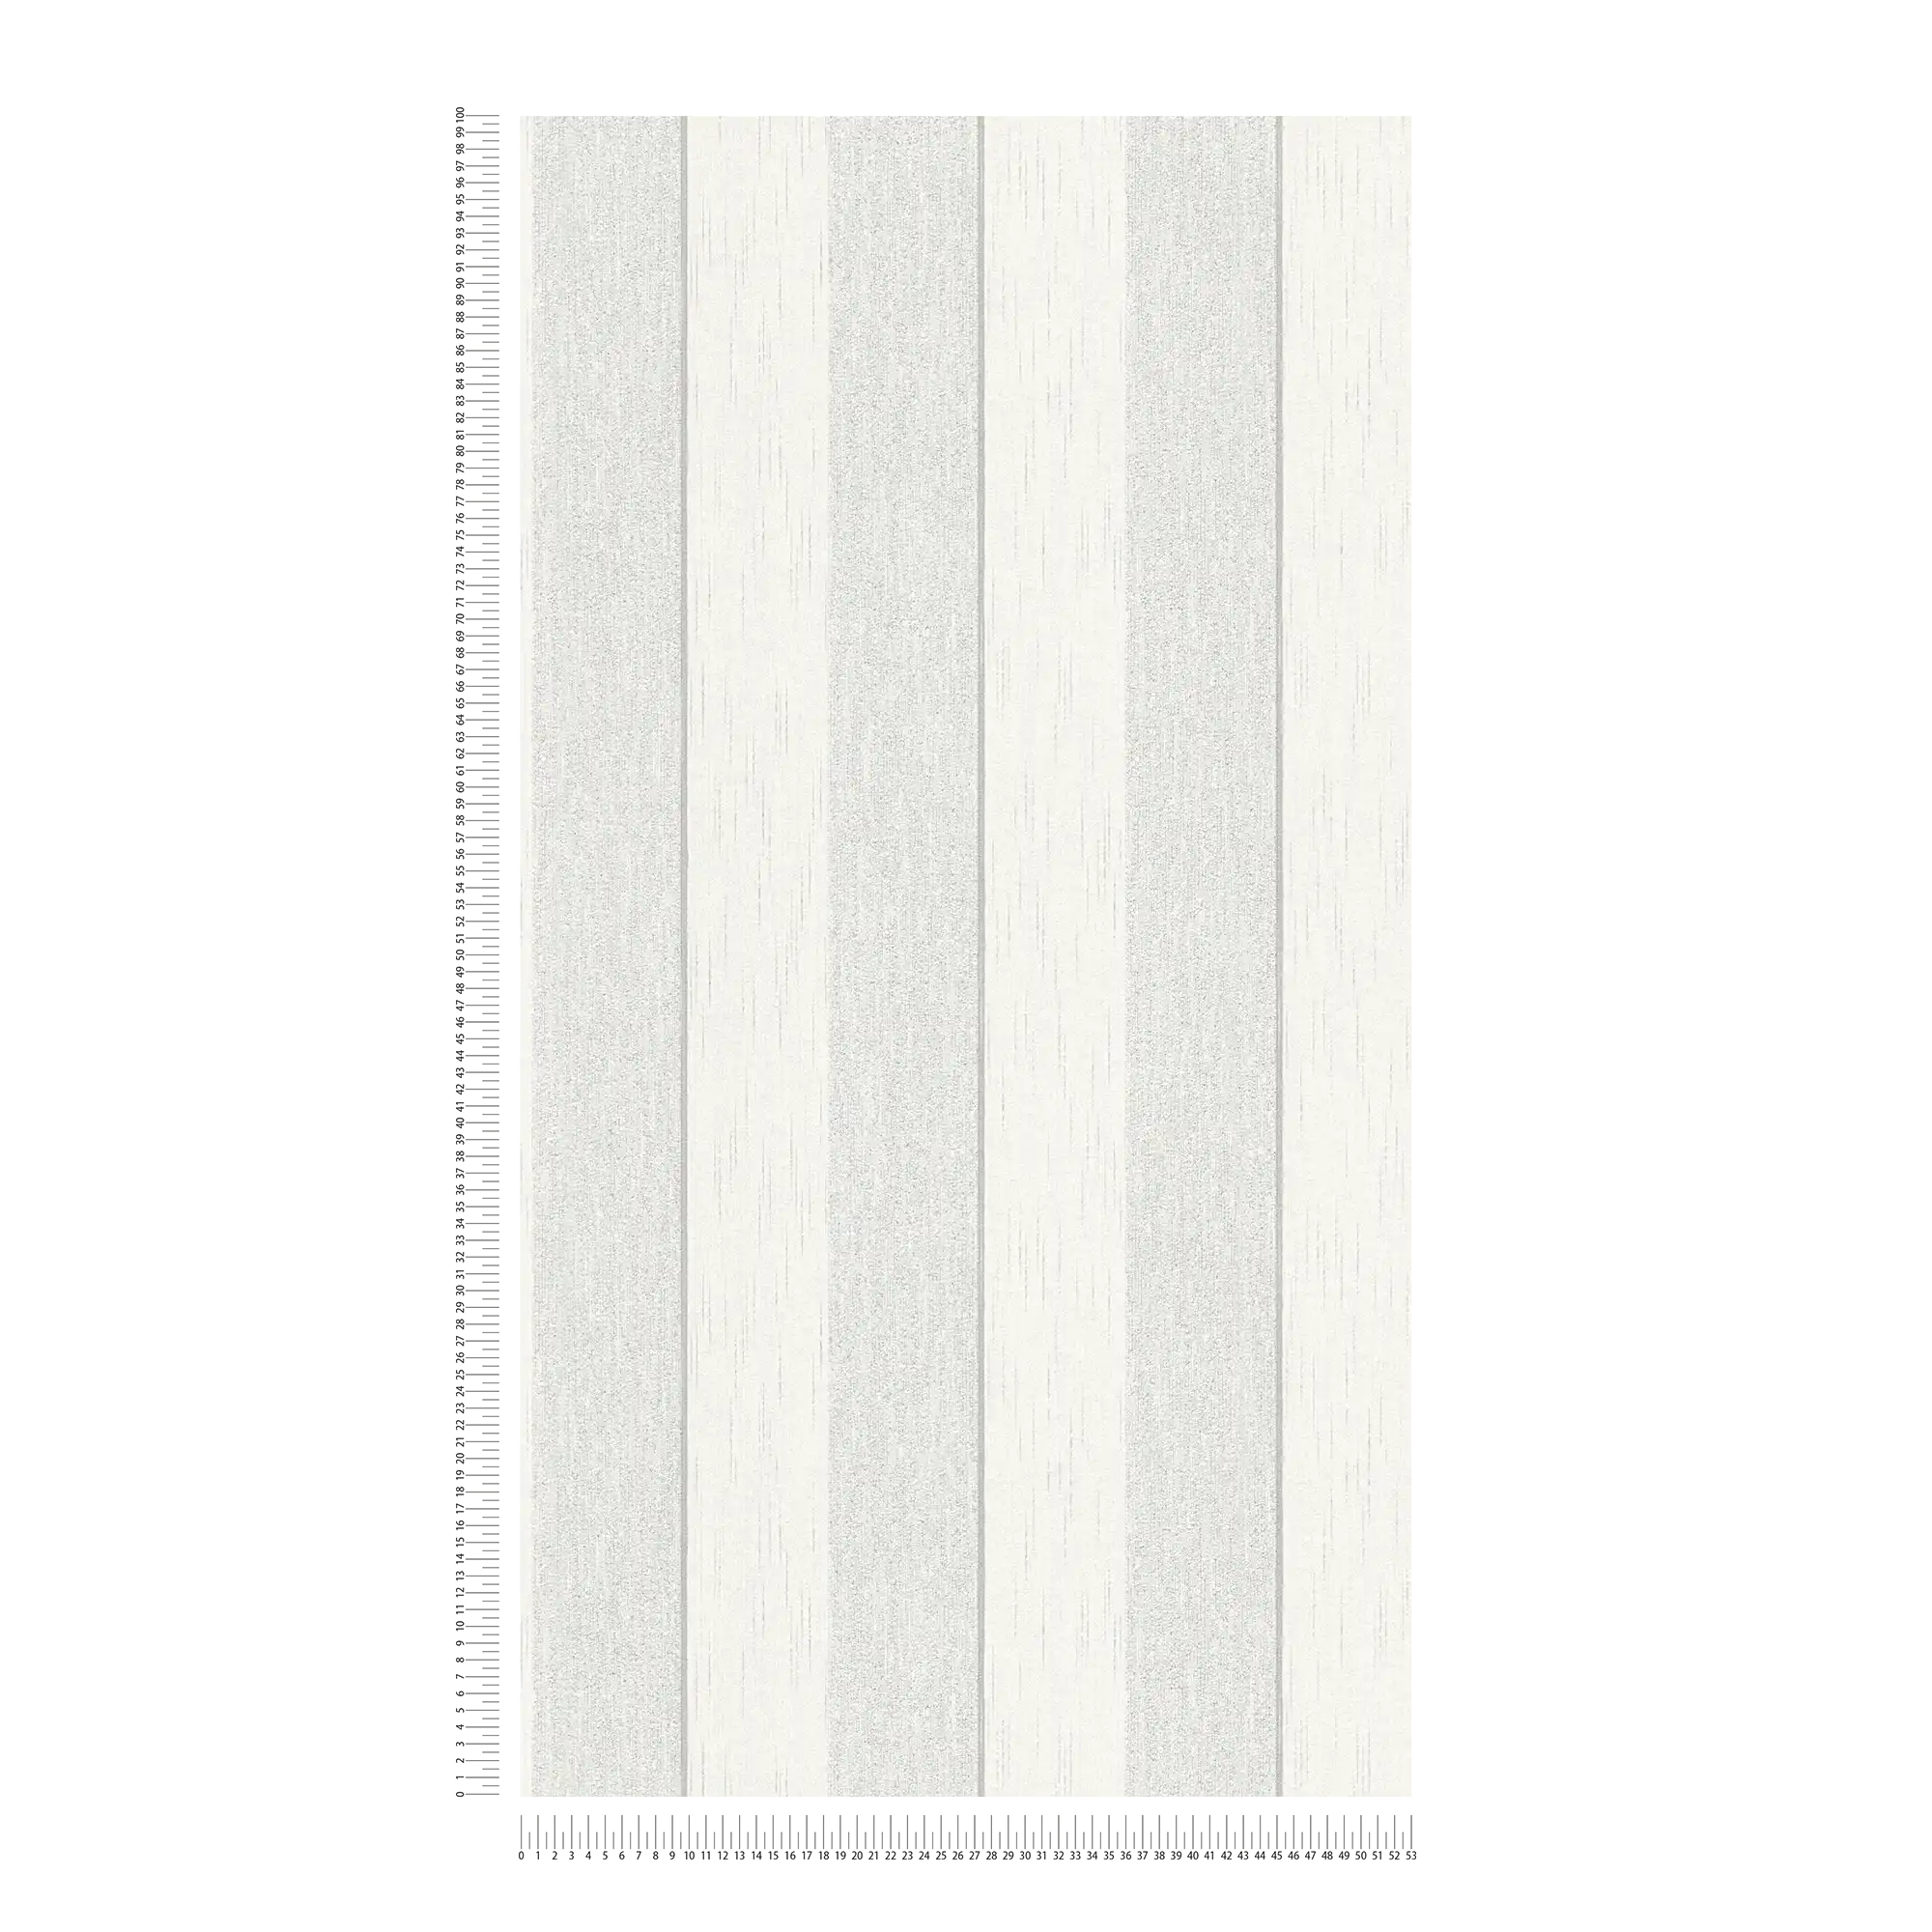             papel pintado efecto rayas moteado - gris, blanco
        